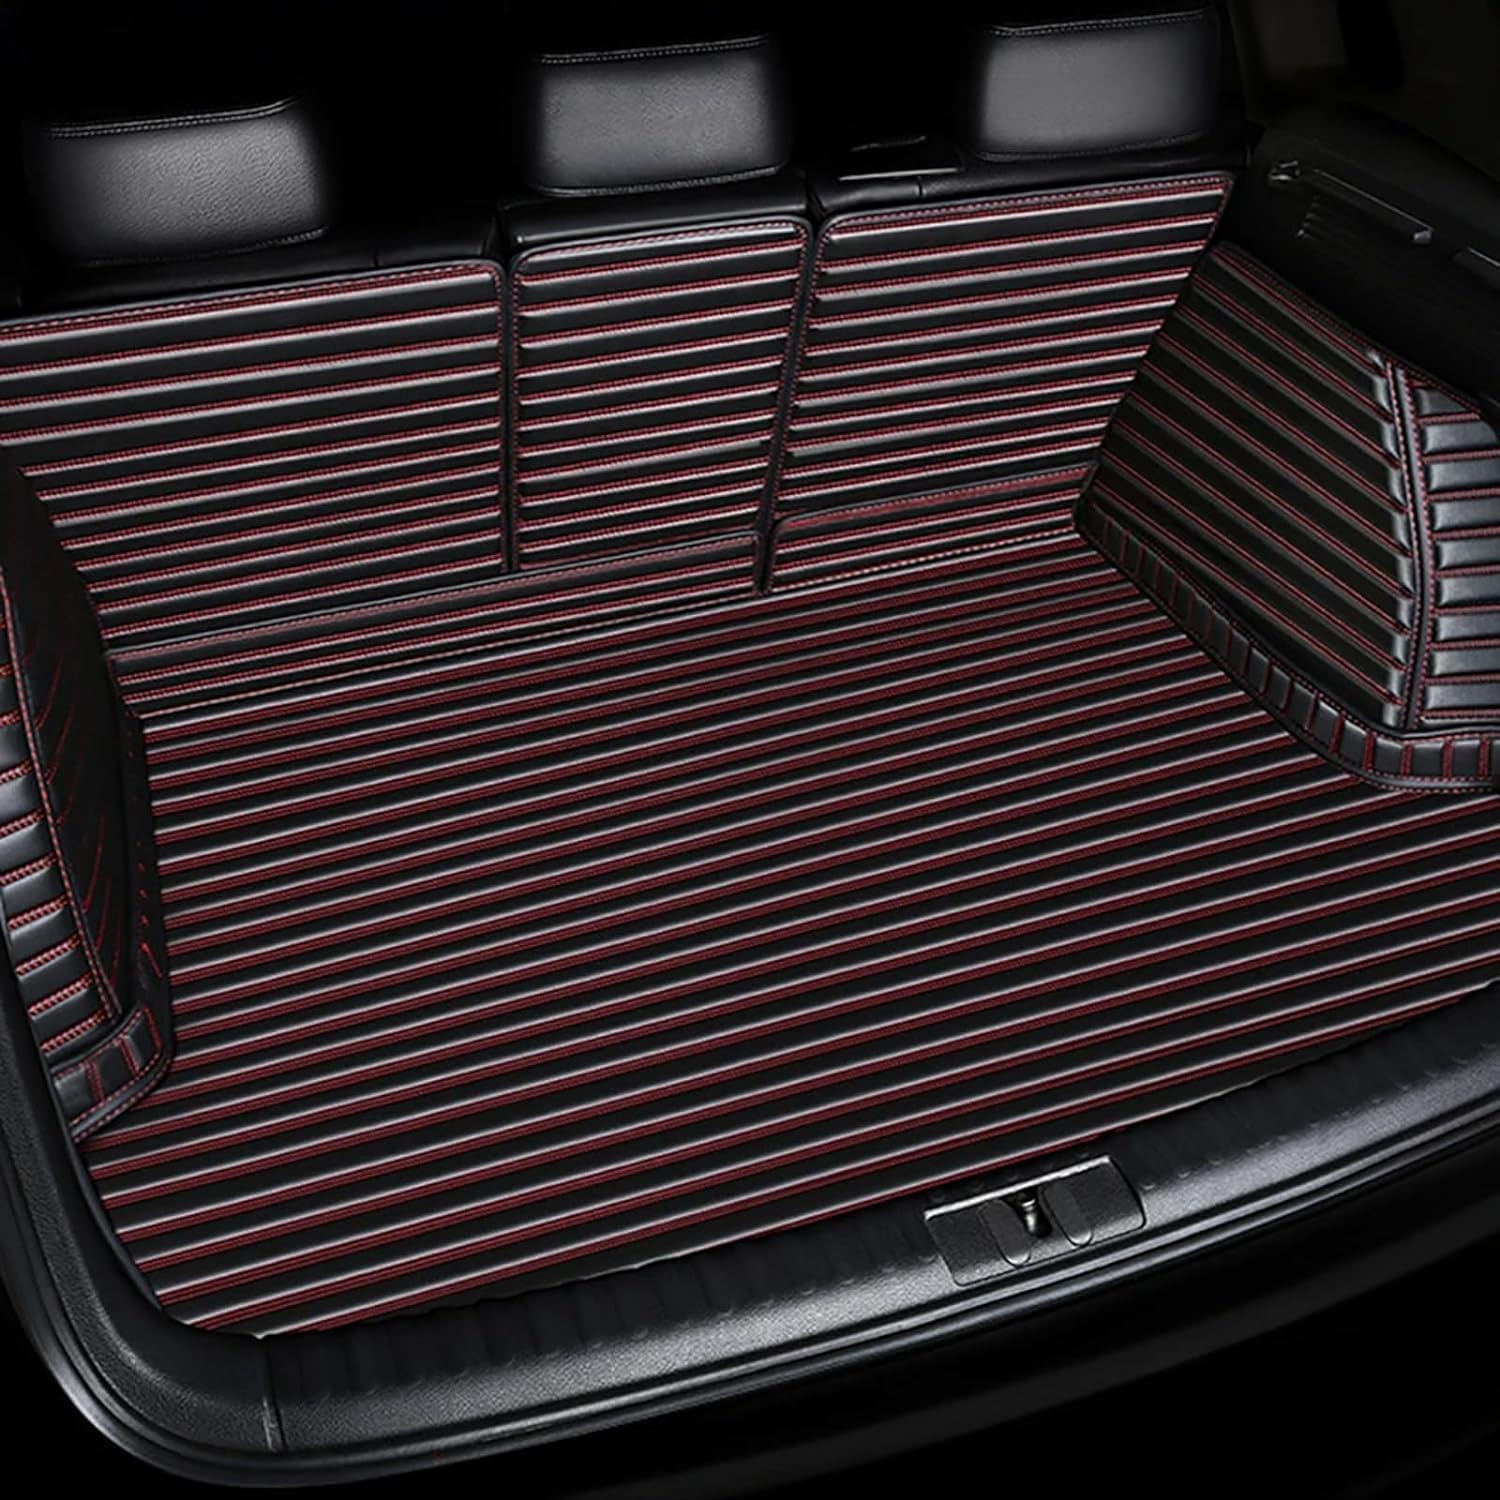 Auto-Leder-Kofferraummatte für B-MW 5 Series E60 2004-2010, vollständige Abdeckung Kratzfest rutschfest langlebig Kofferraumschutzmatte Autozubehör,B/Black-Red von IUKTHHJOR